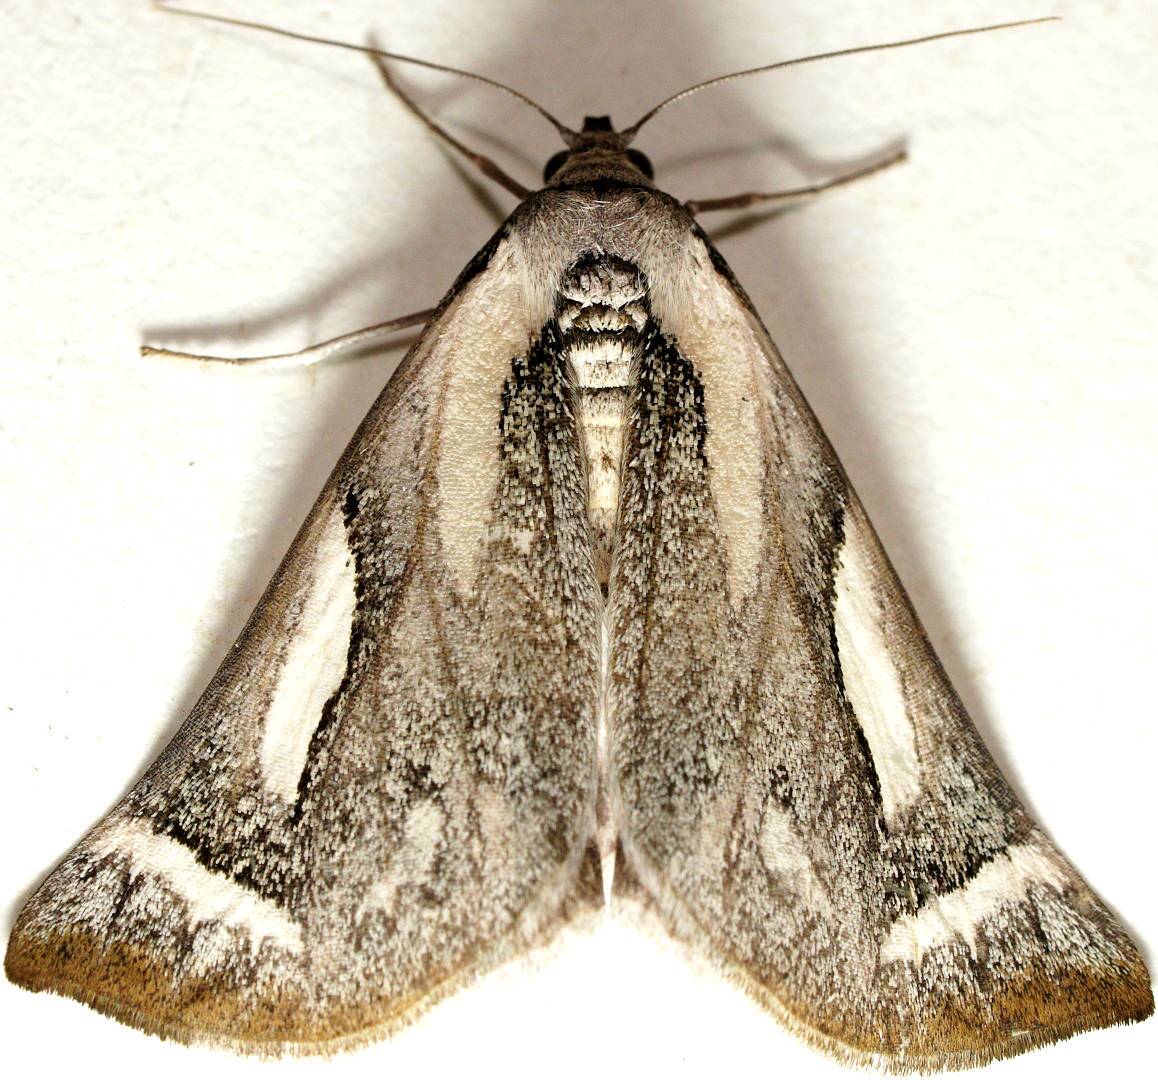 Grey & White Satin Moth (Thalaina kimba)